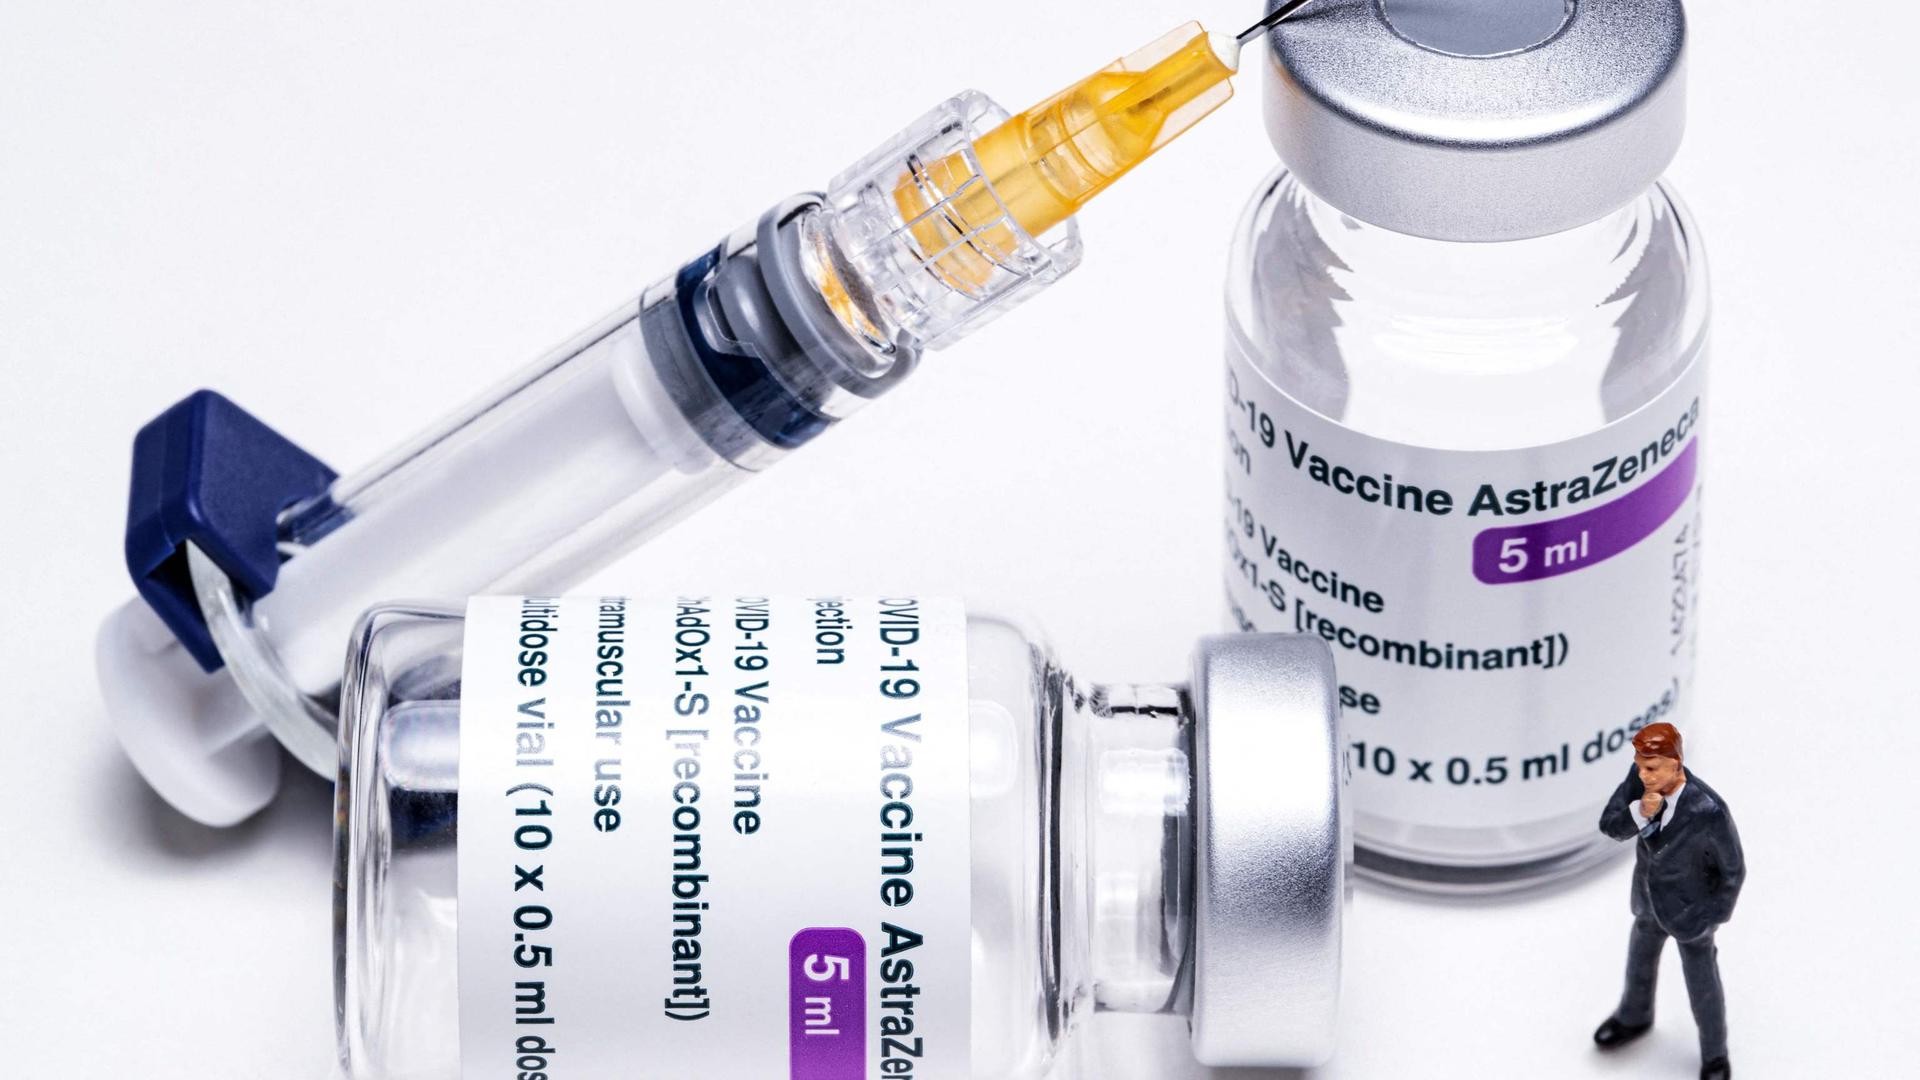 Doses of the AstraZeneca vaccine